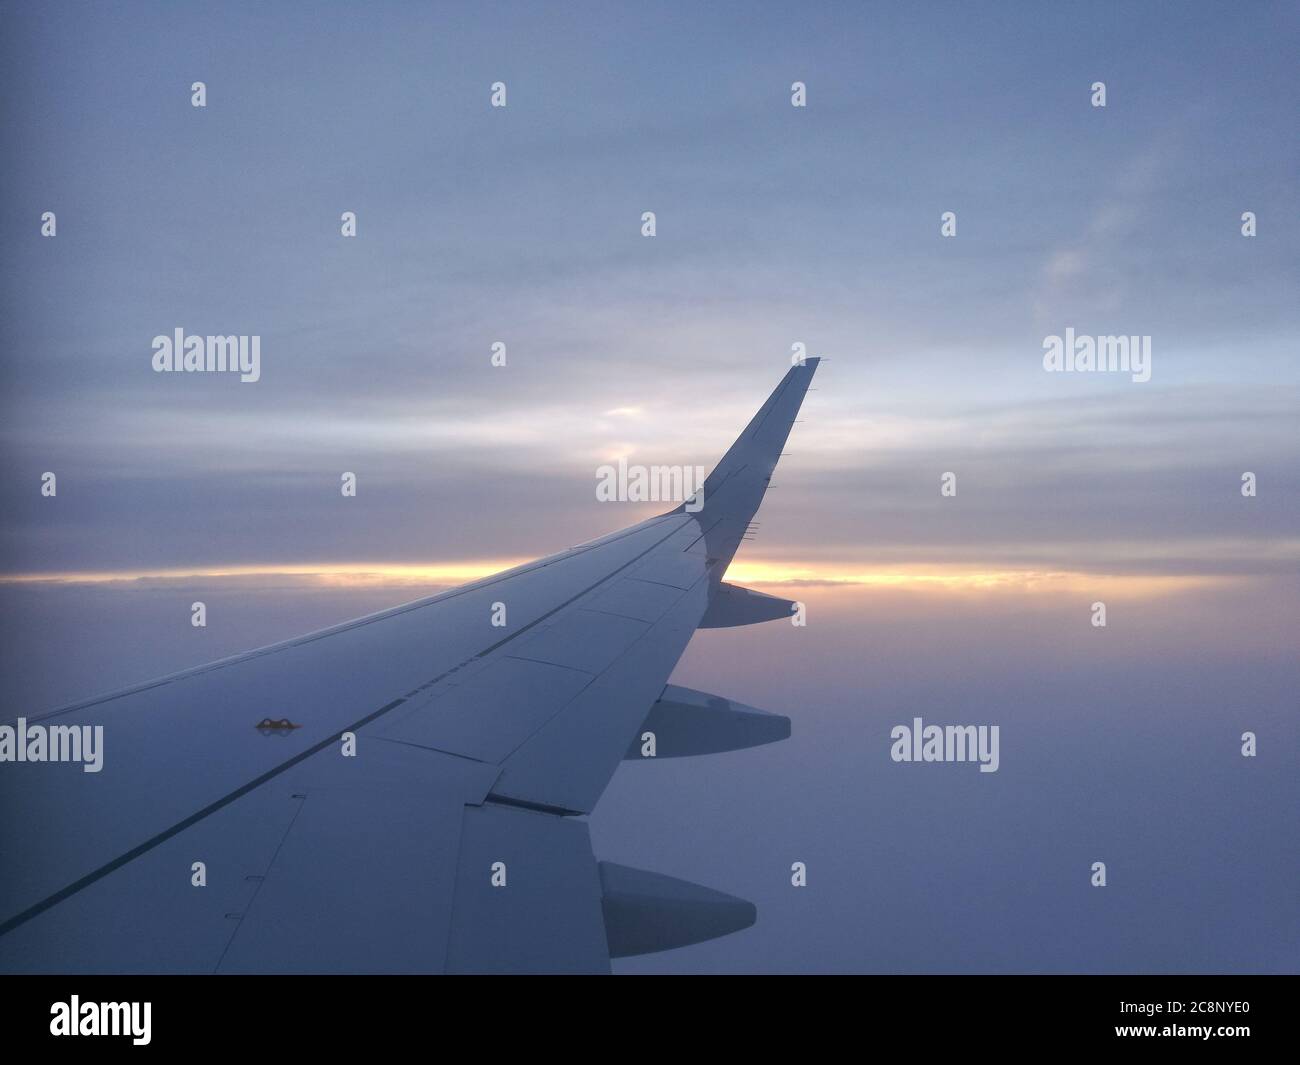 El ala de un avión con un fondo nublado Foto de stock